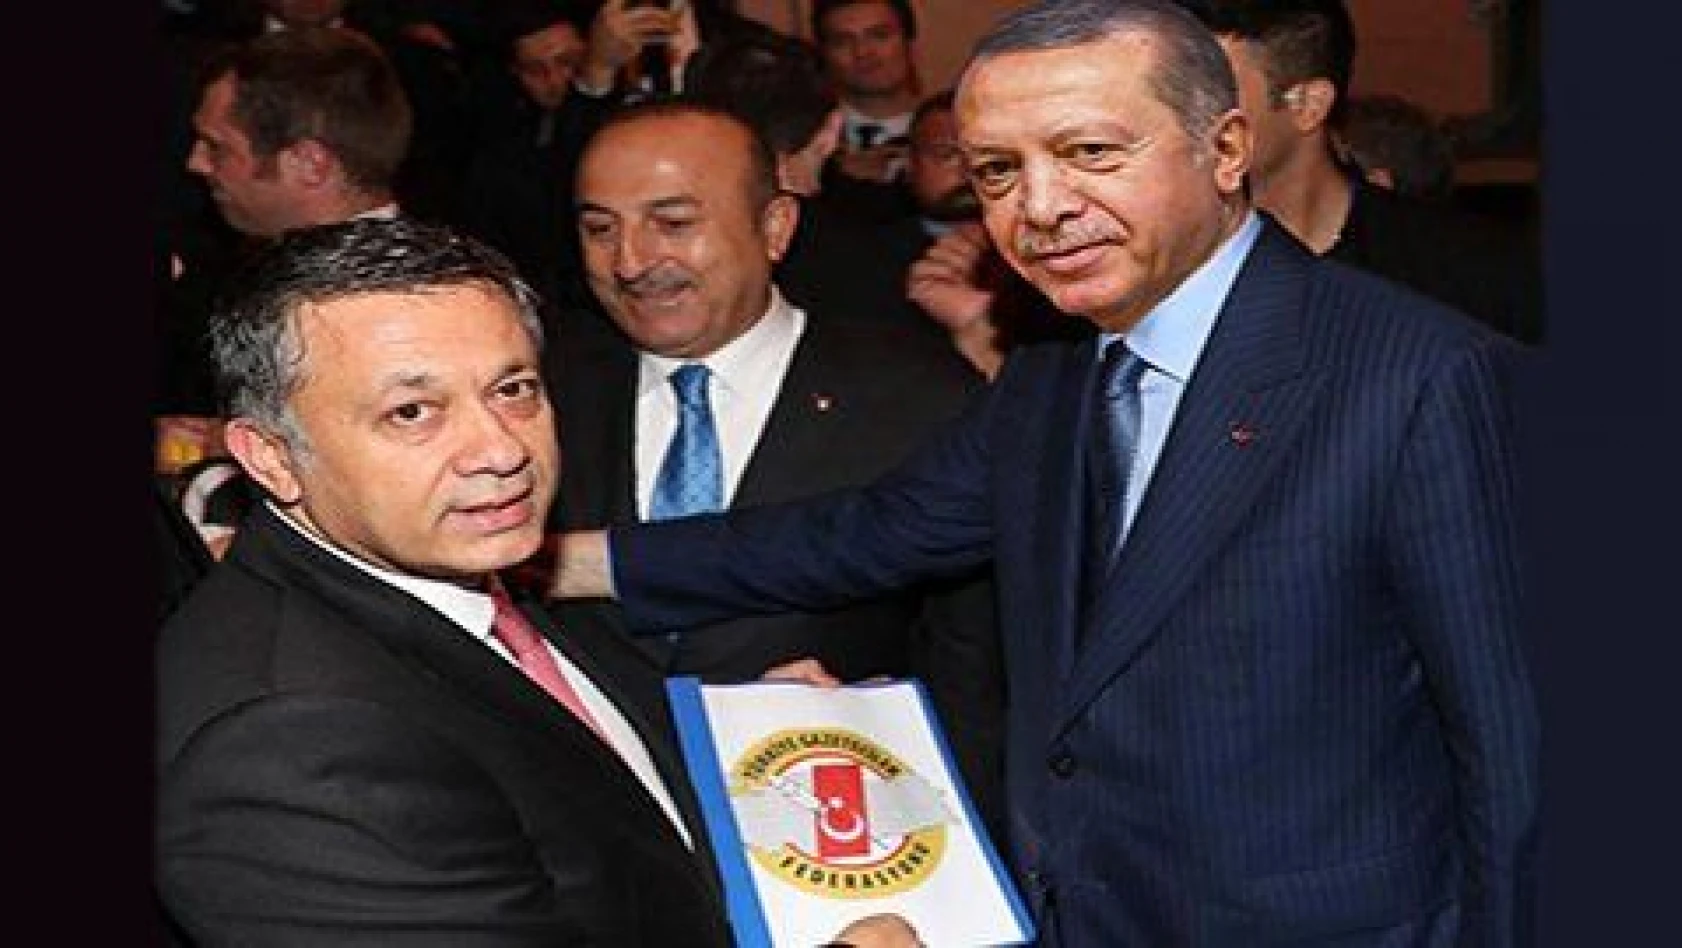 TGF Başkavekili Dim, Başkan Erdoğan'a medyanın sorunlarını iletti